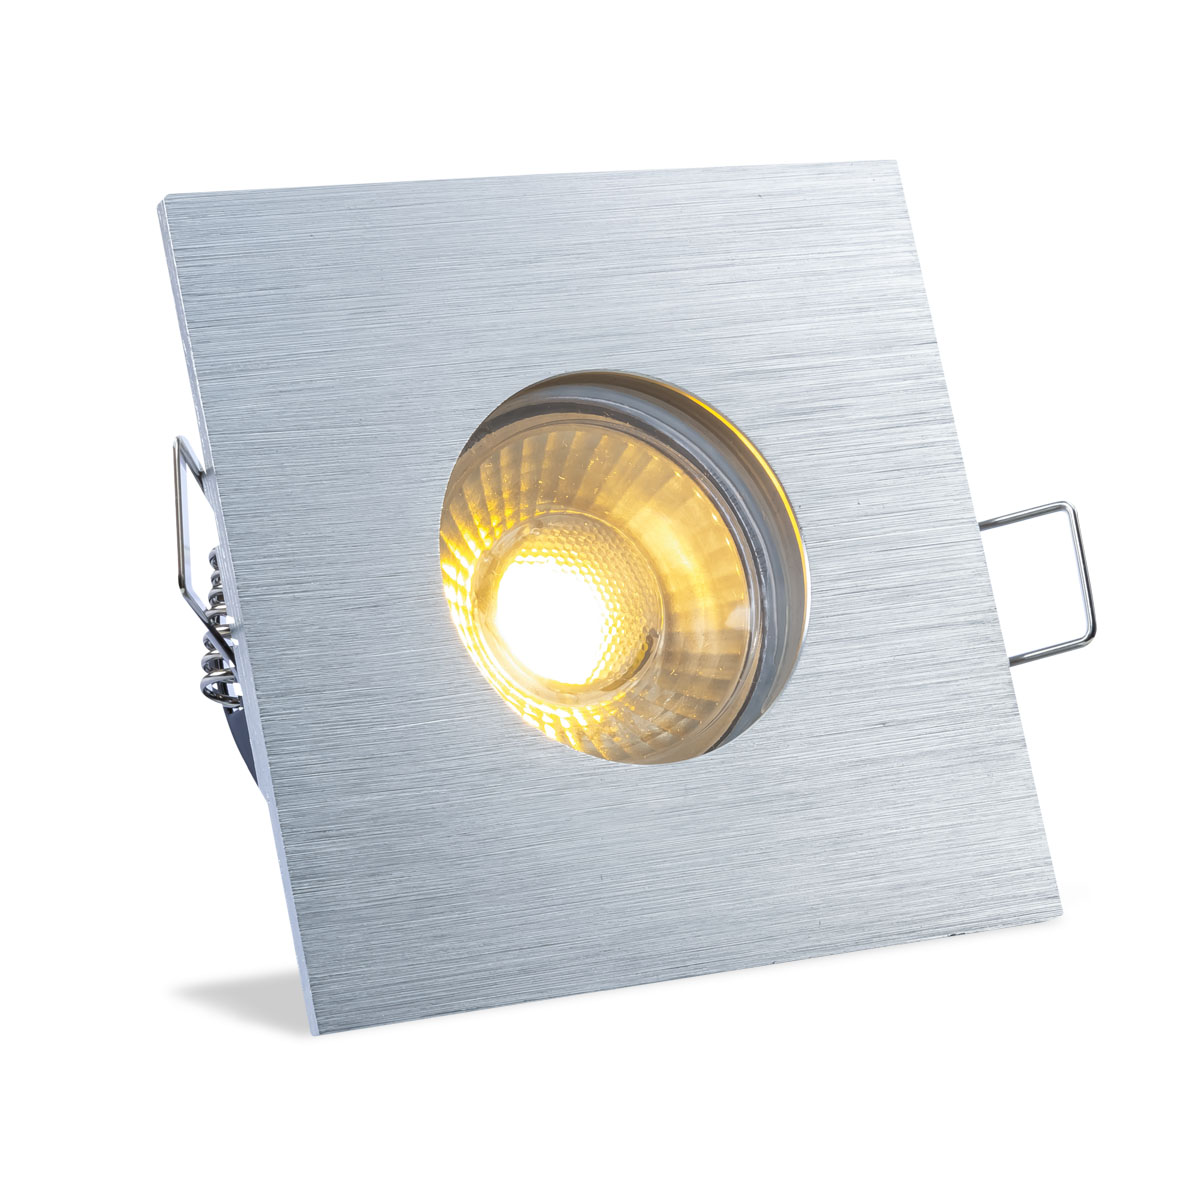 Einbauspot IP65 eckig - Abdeckring:  Alu-gebürstet - LED Leuchtmittel:  GU10 5W warmweiß